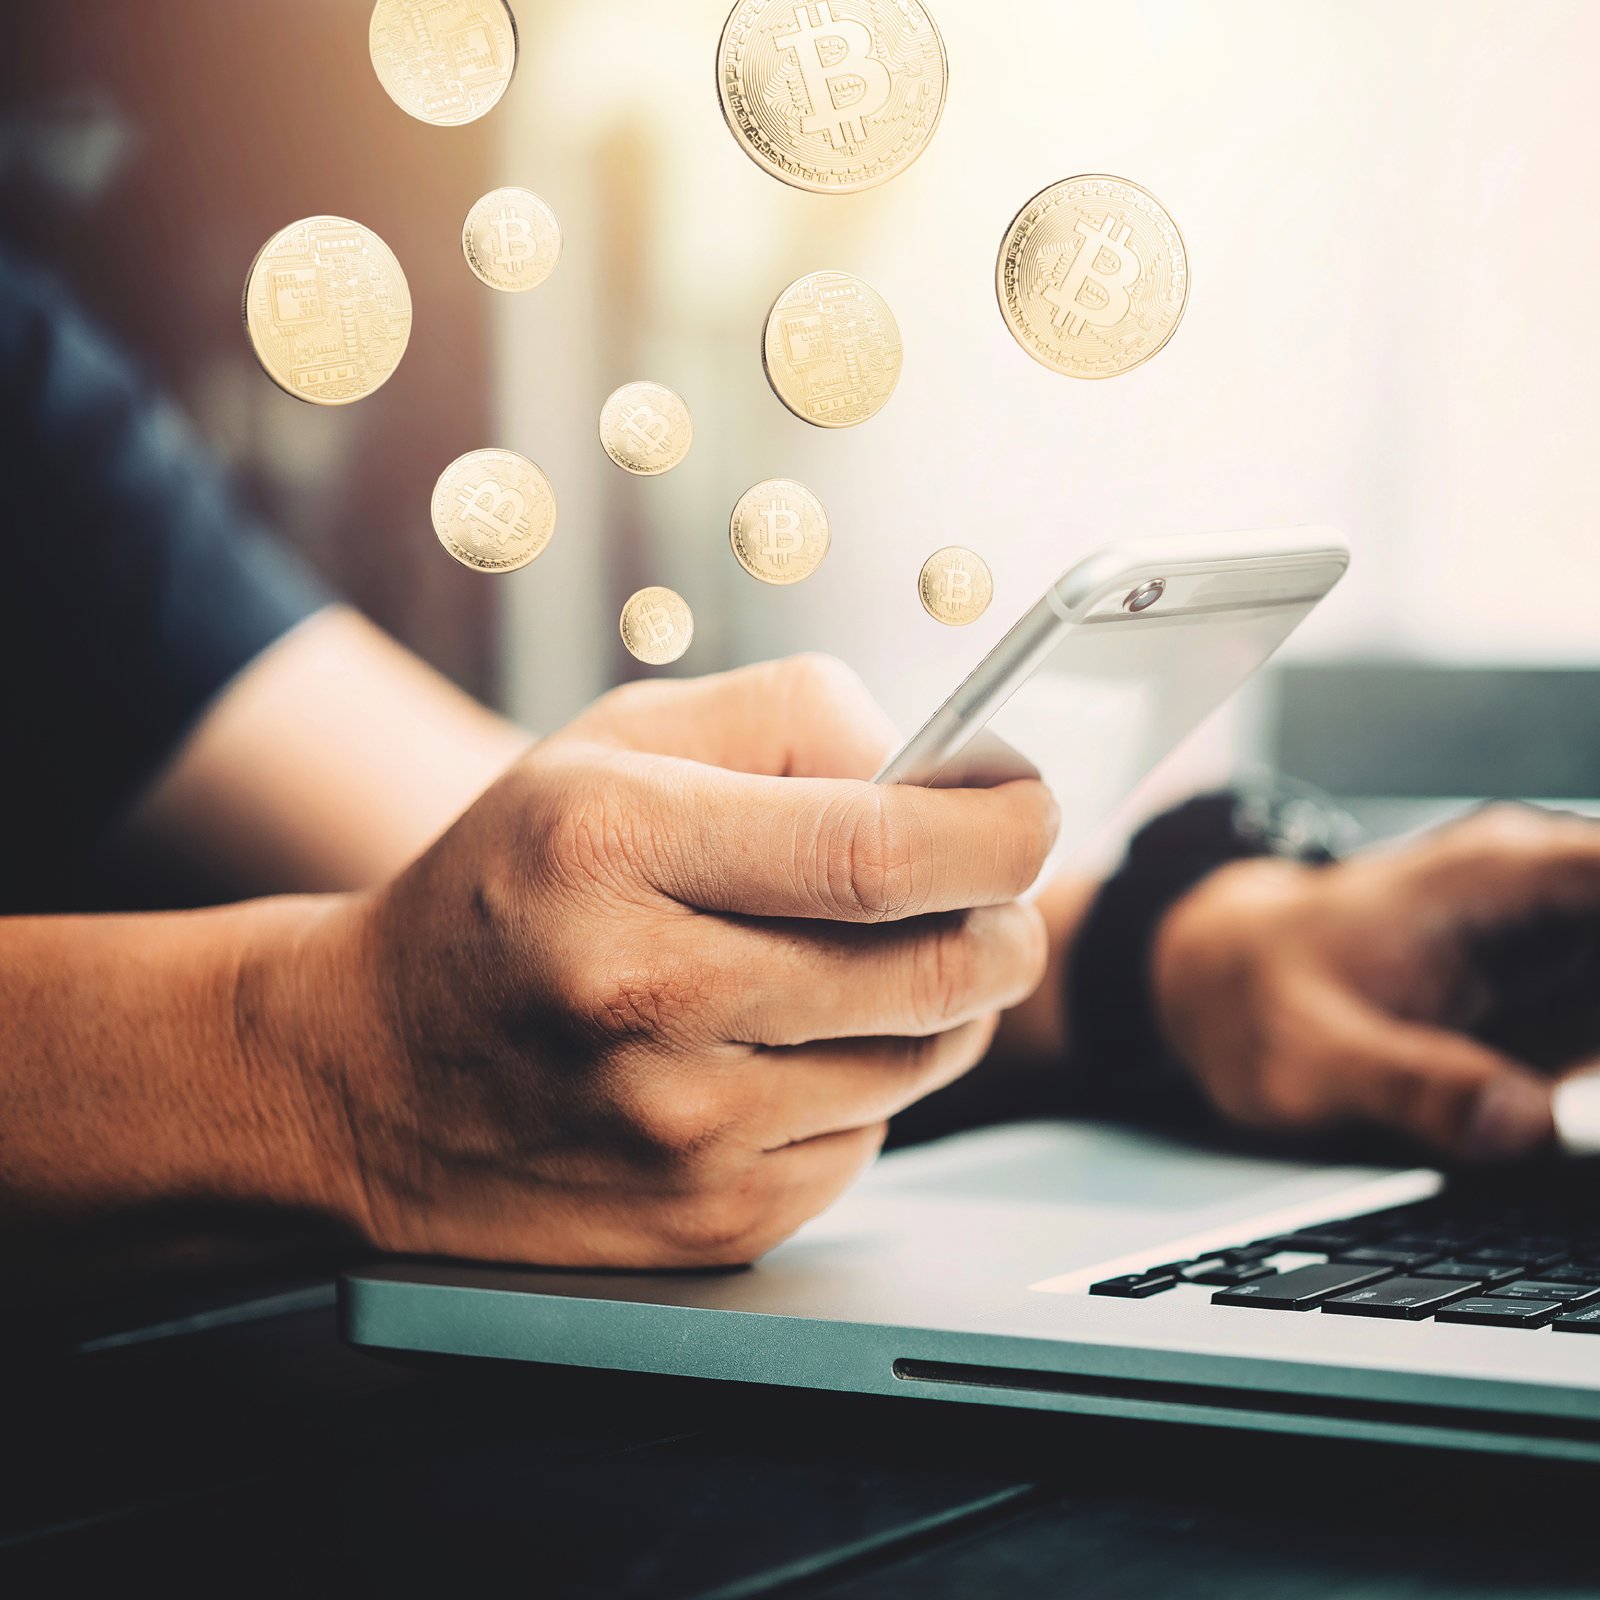 Come acquistare Bitcoin con SMS | Investimenti Magazine